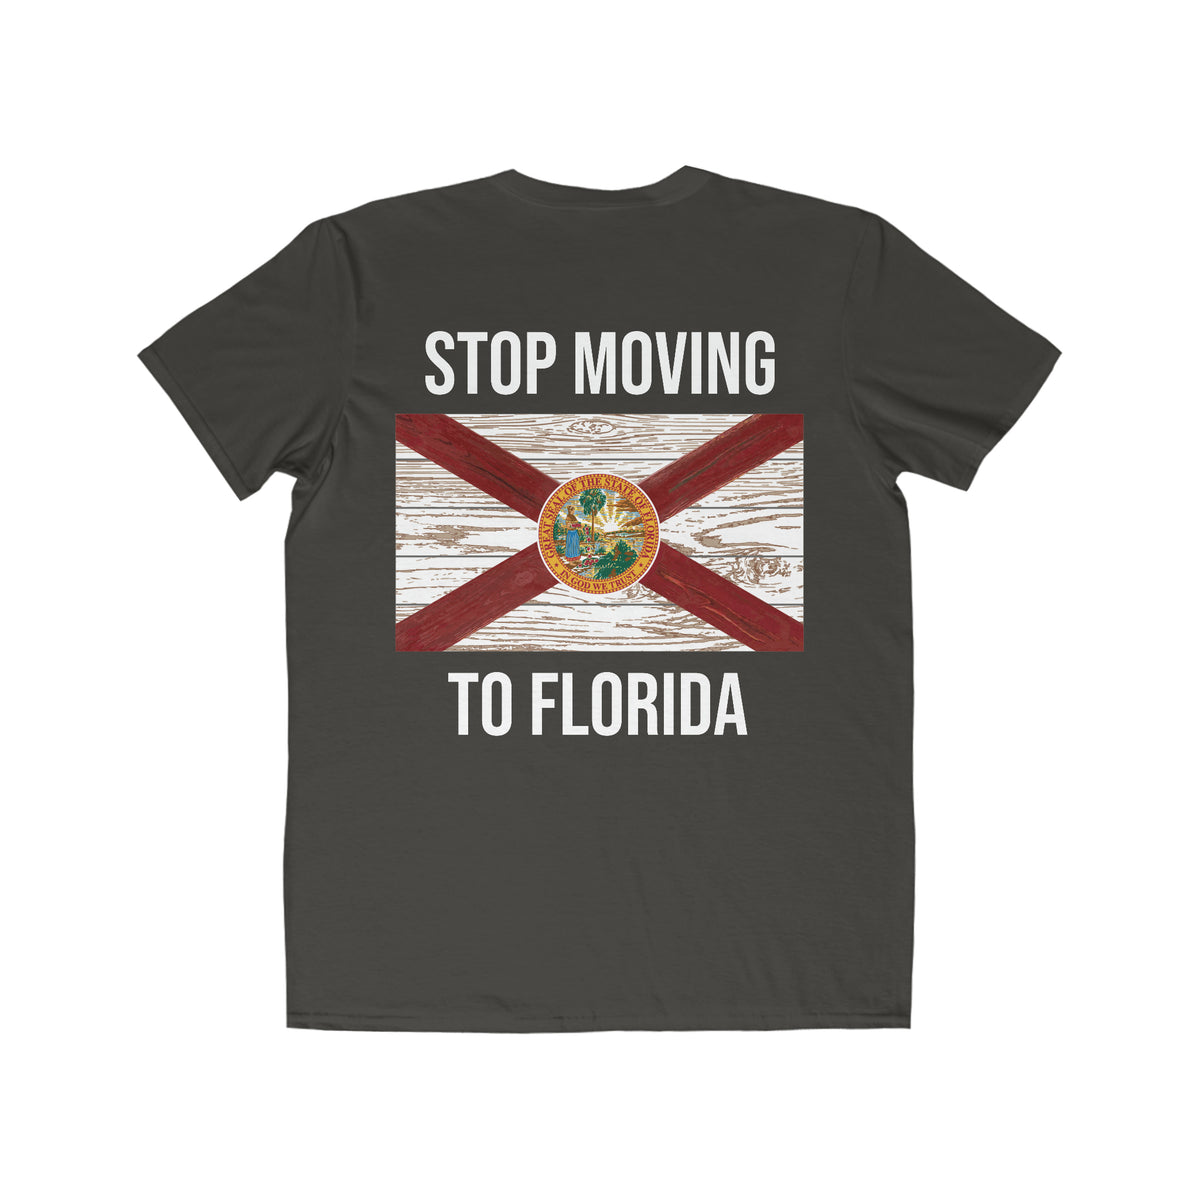 Stop Moving to Florida Men's Lightweight Tee (FloridaMan)